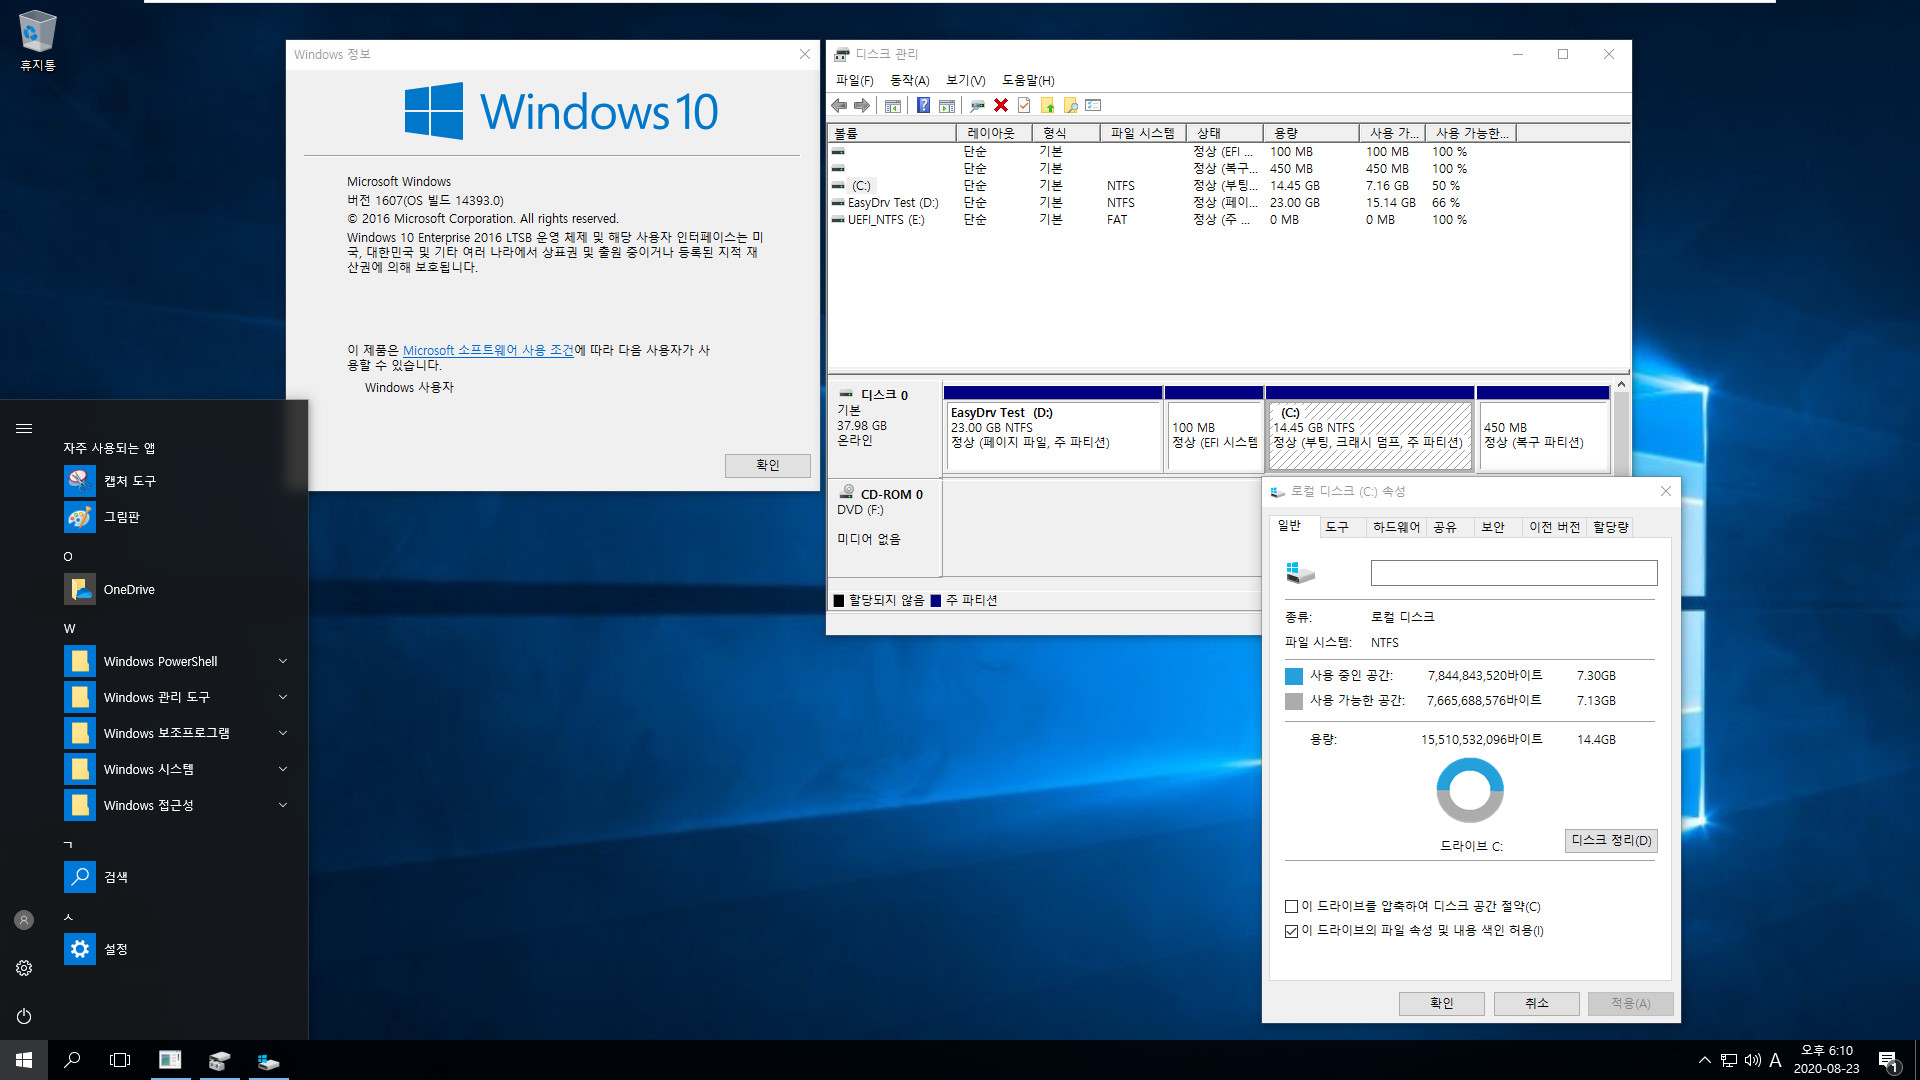 Windows 10 v2004 x64 PE와 Windows 설치 통합 뼈대 2탄 - sources 1개에 x64 x86 겸용뼈대.iso으로 EasyDrv 관리자계정 무인설치 테스트 - vmware에서 윈도우 10 64비트 UEFI 설치 2020-08-23_181023.jpg